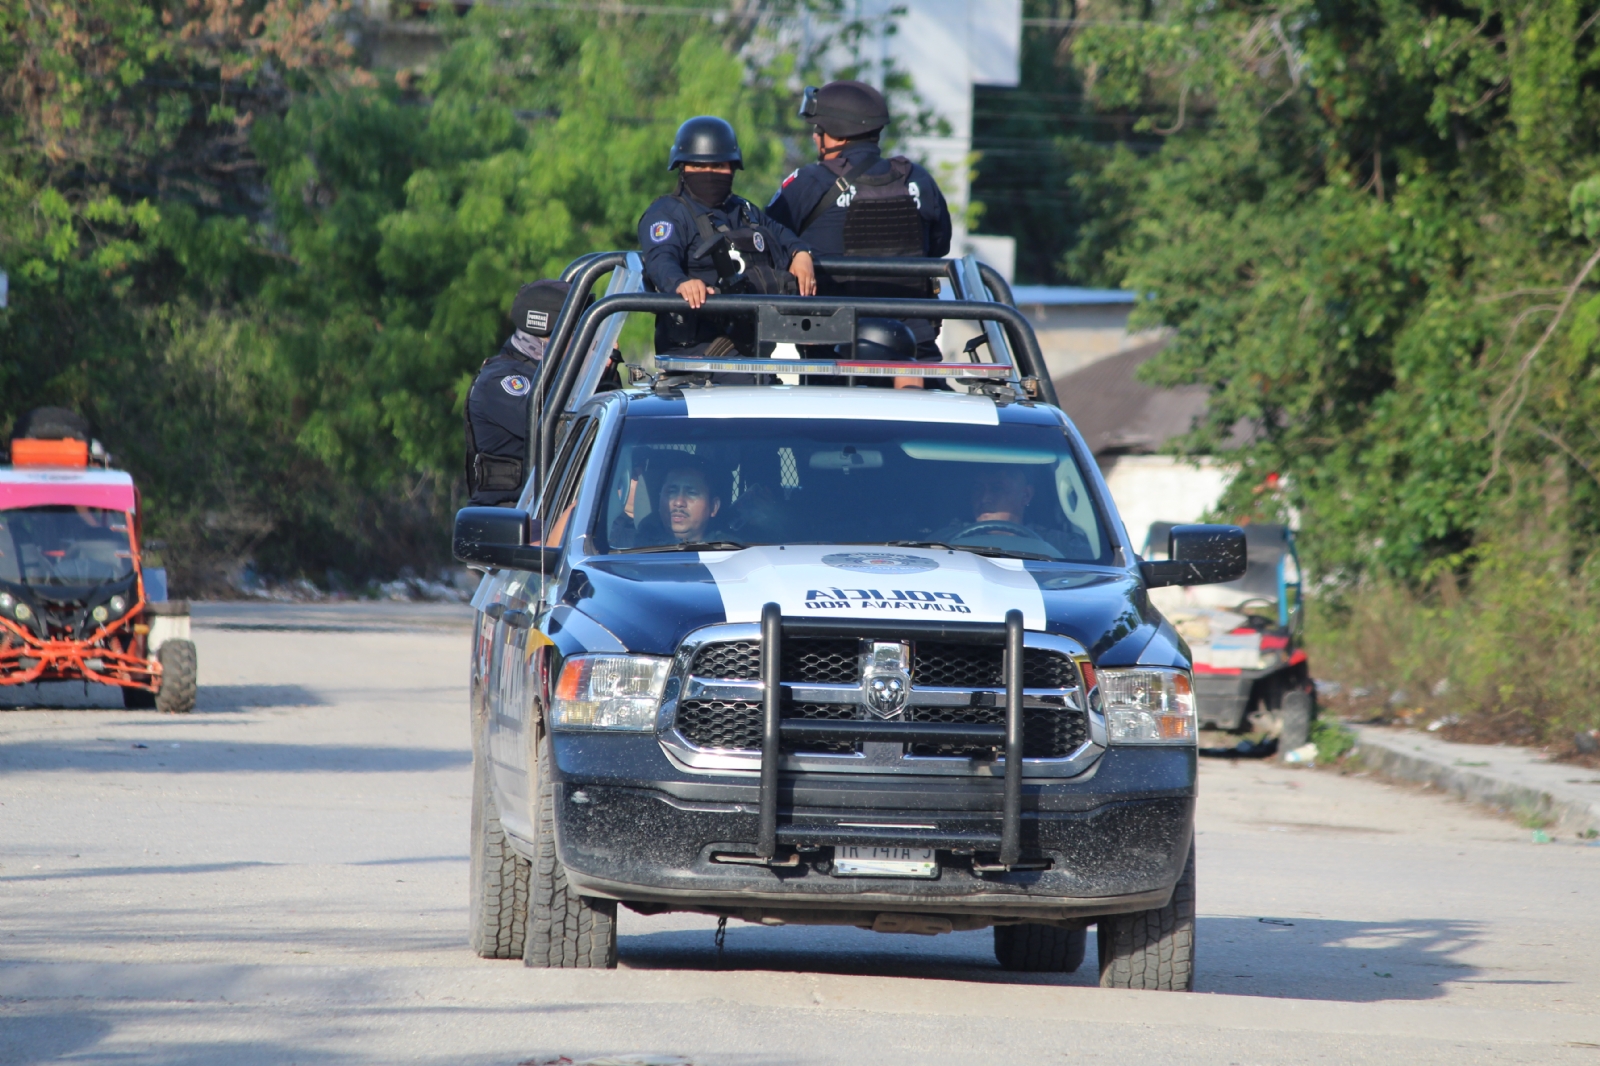 Policía Municipal de Tulum, una de las más corruptas en Quintana Roo: Ciudadanos